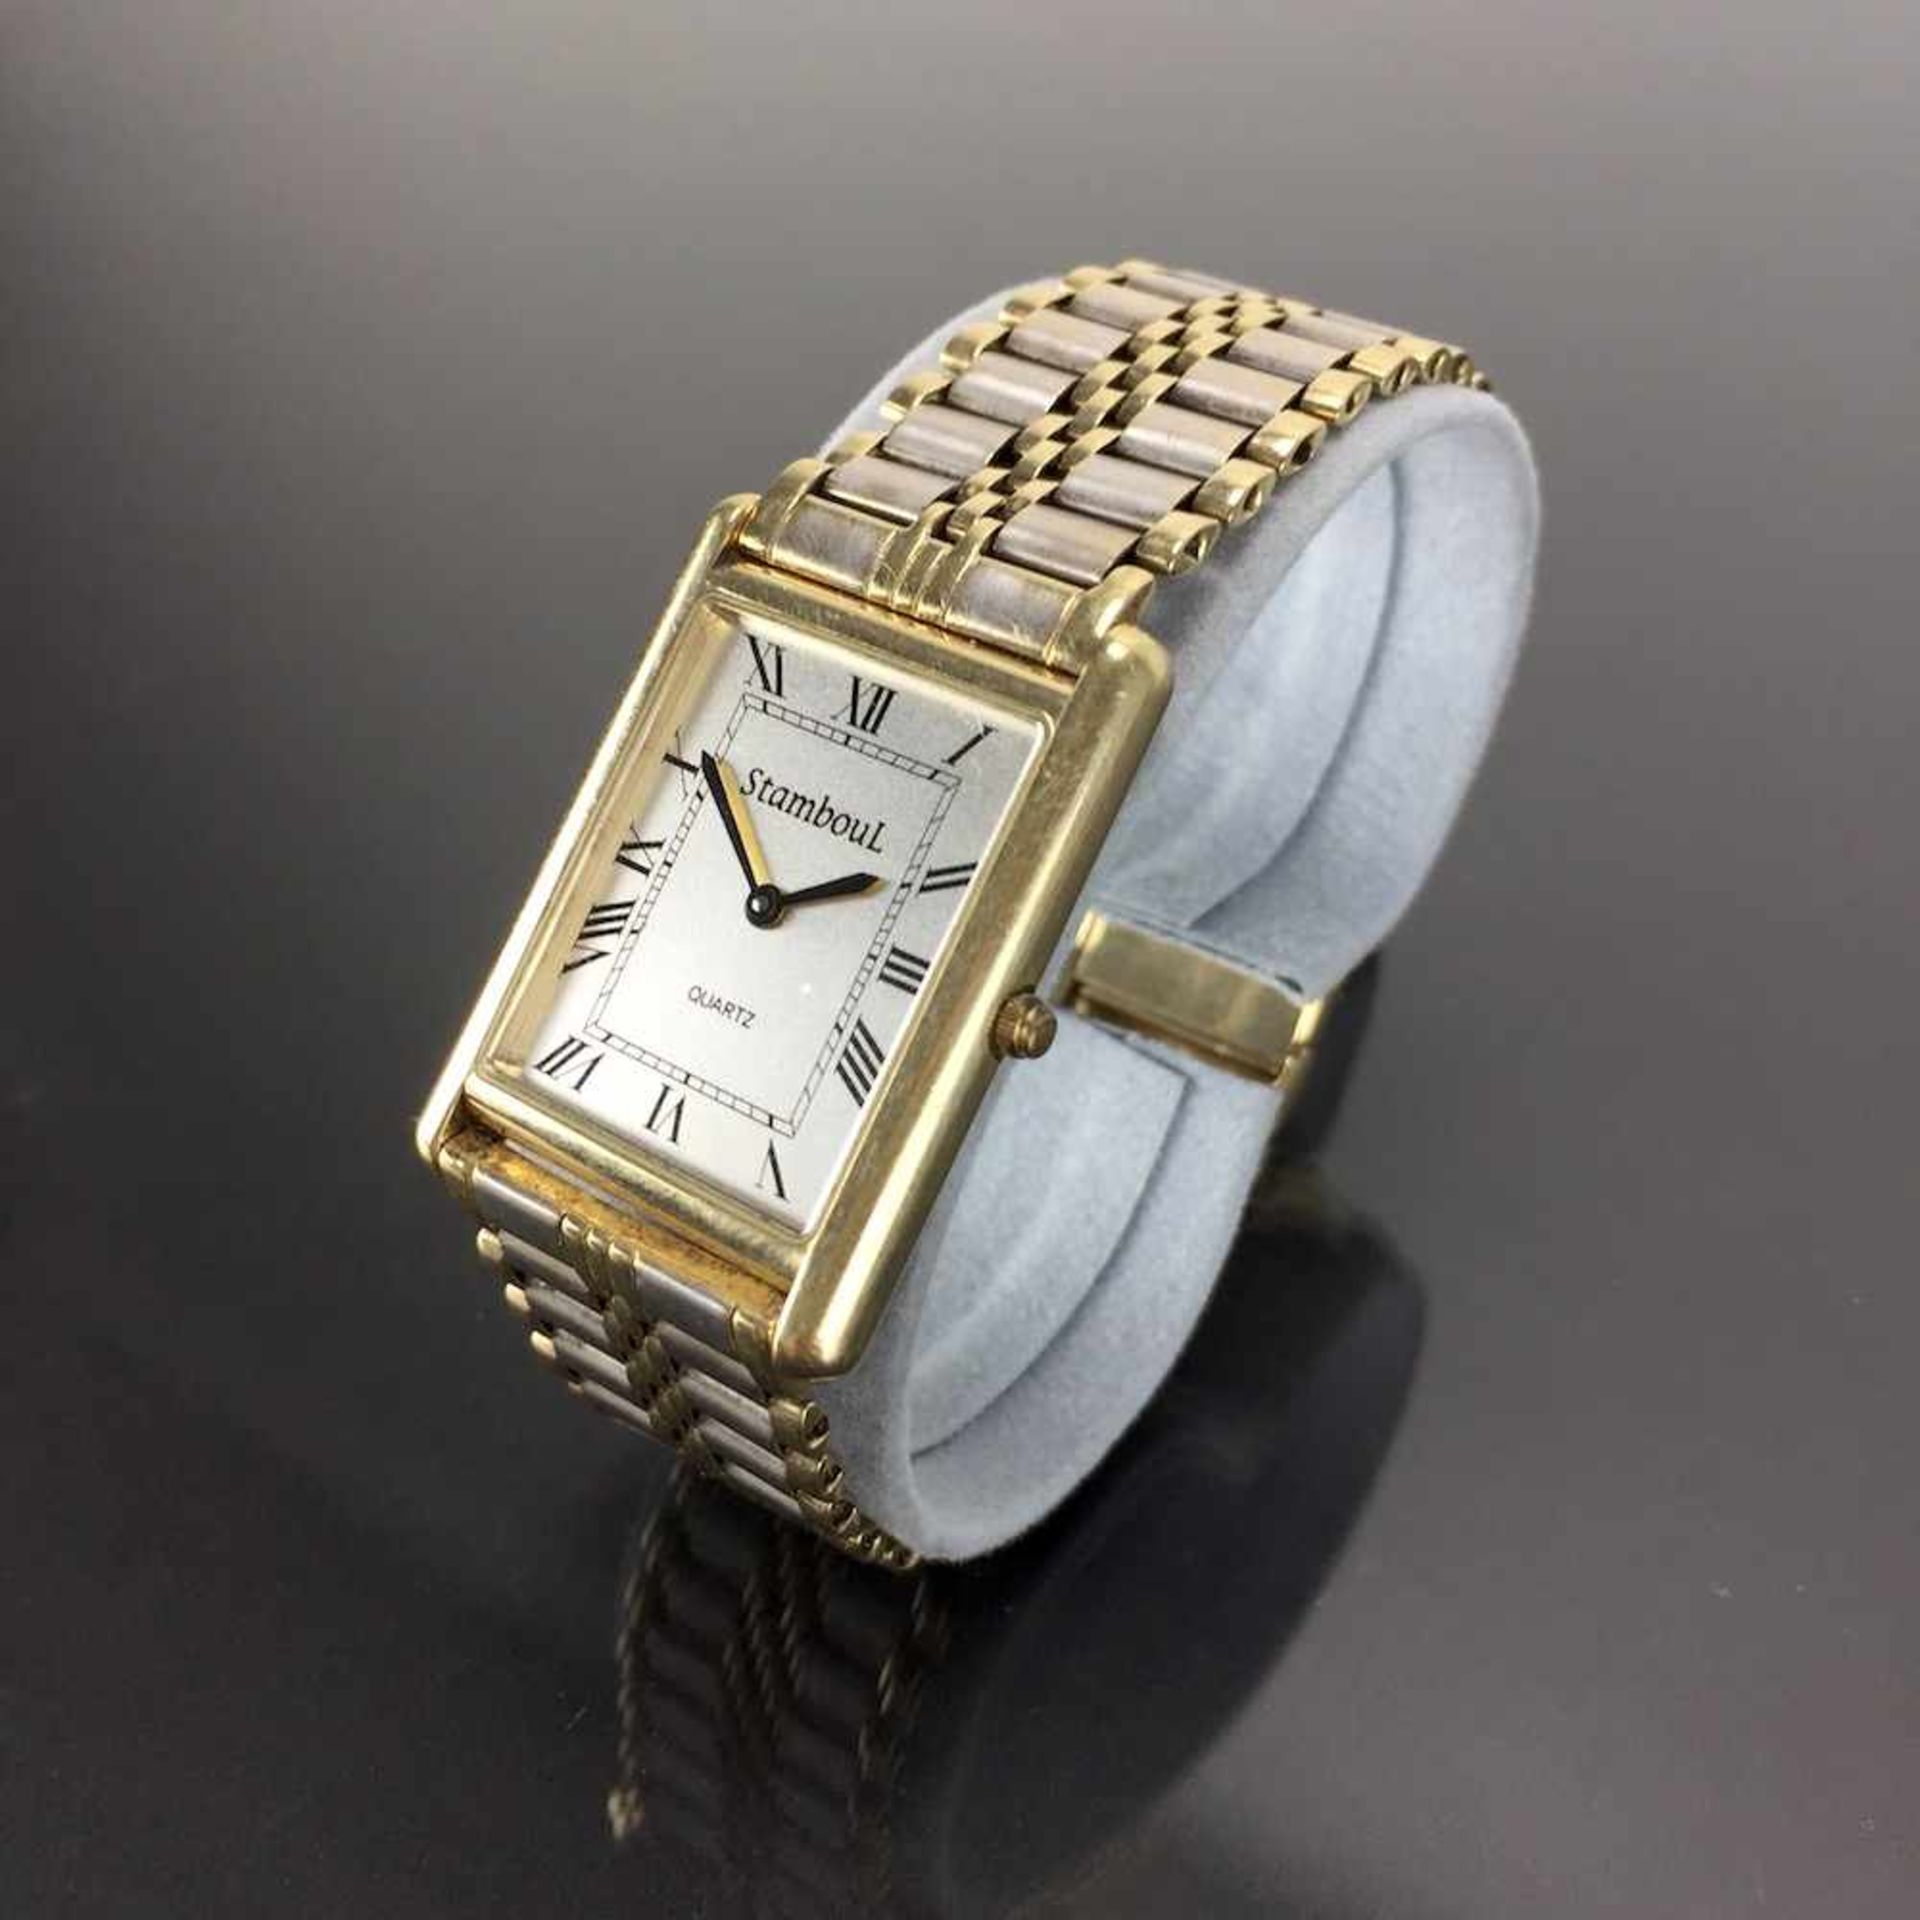 Schwere Herren Armbanduhr: Gold 585 / 14 K.Gemarkt "StambouL | Quartz". Rechteckiges Gehäuse aus - Bild 3 aus 4